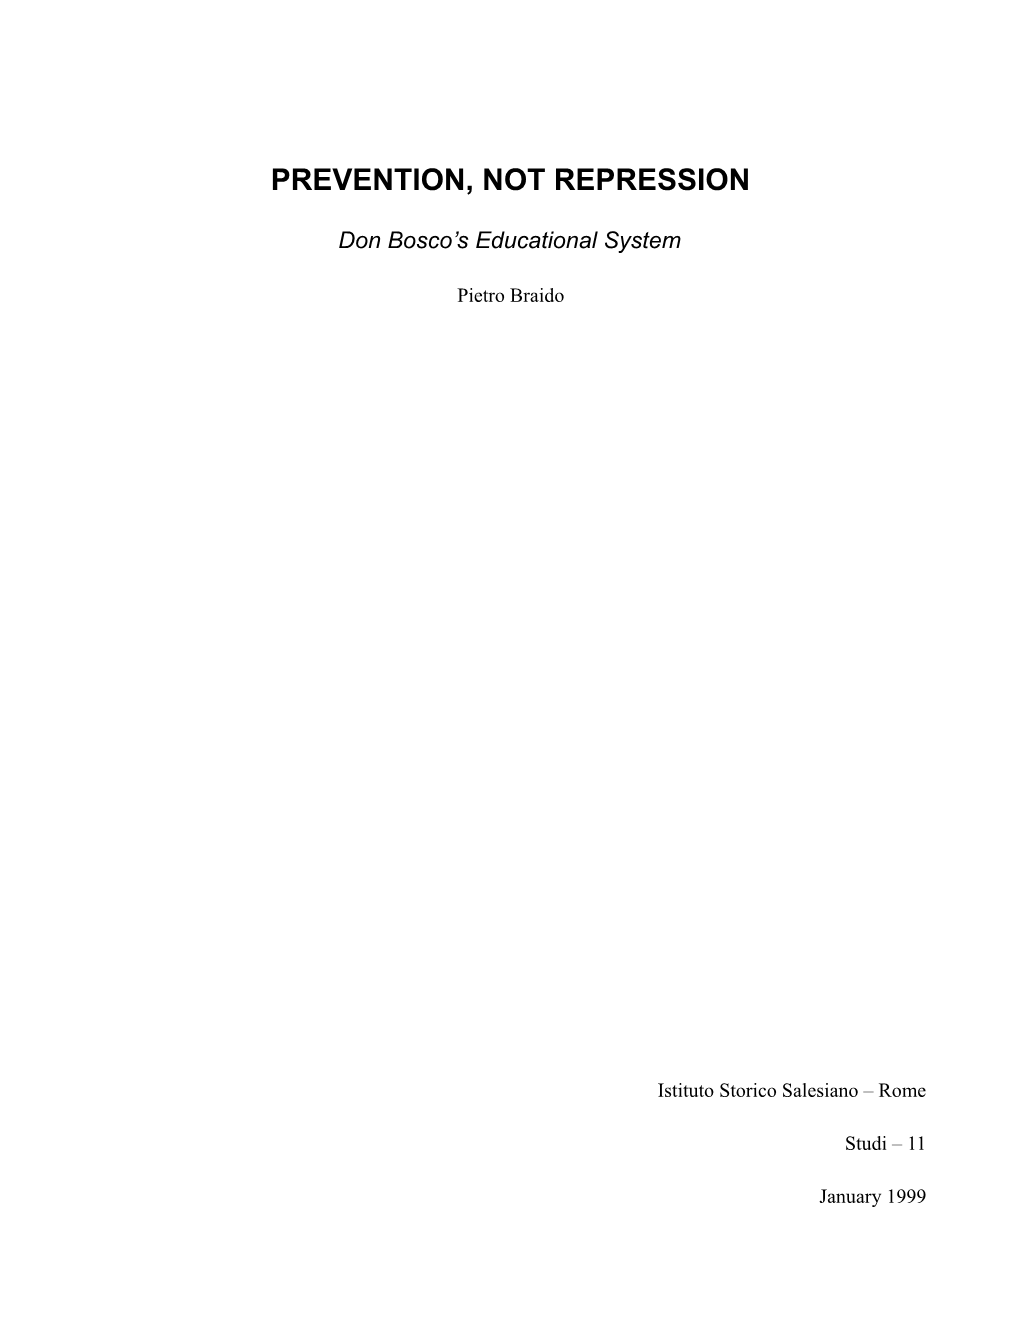 Prevention, Not Repression